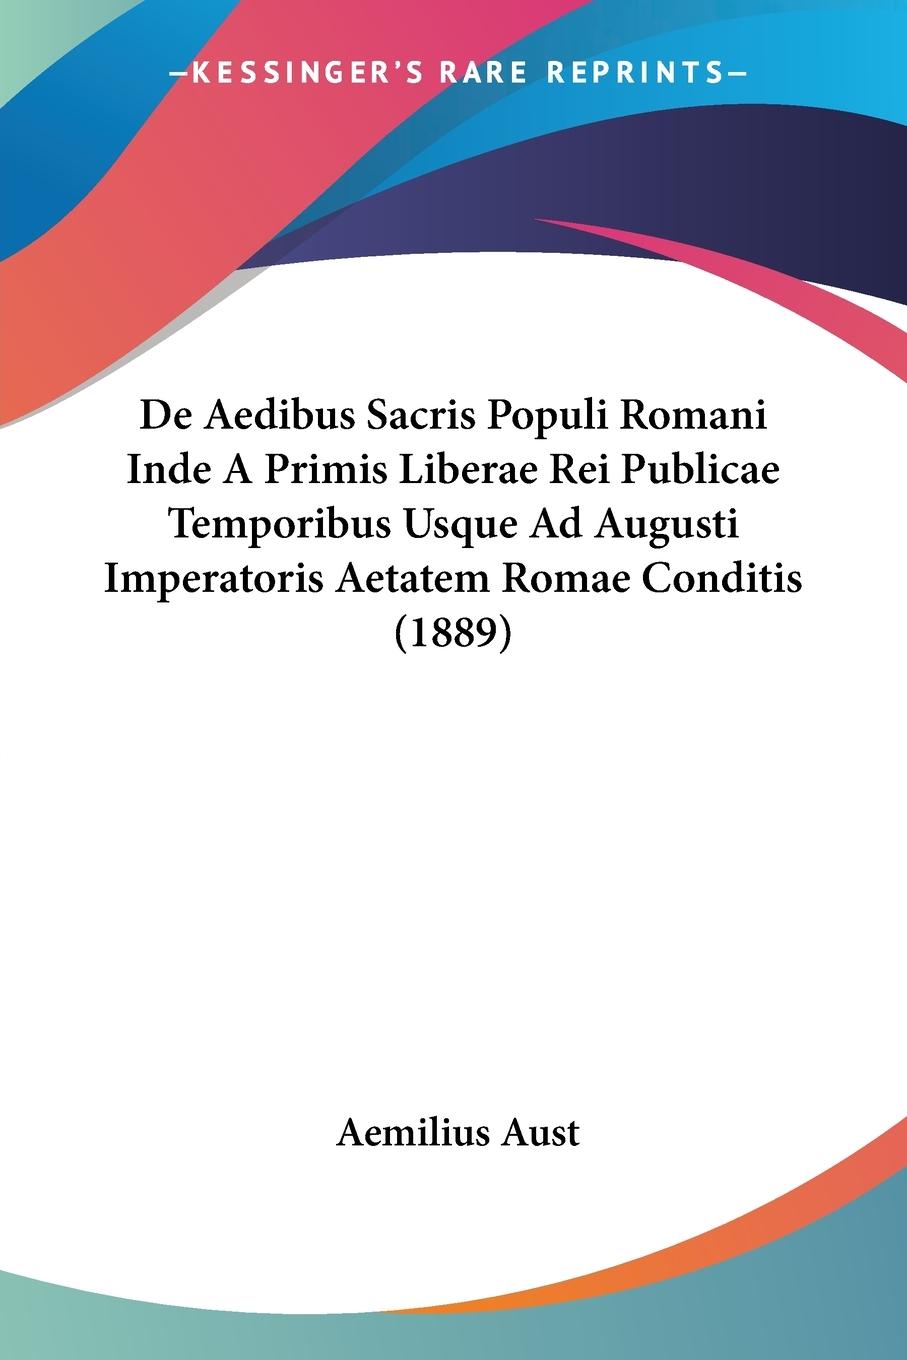 De Aedibus Sacris Populi Romani Inde A Primis Liberae Rei Publicae Temporibus Usque Ad Augusti Imperatoris Aetatem Romae Conditis (1889) - Aust, Aemilius